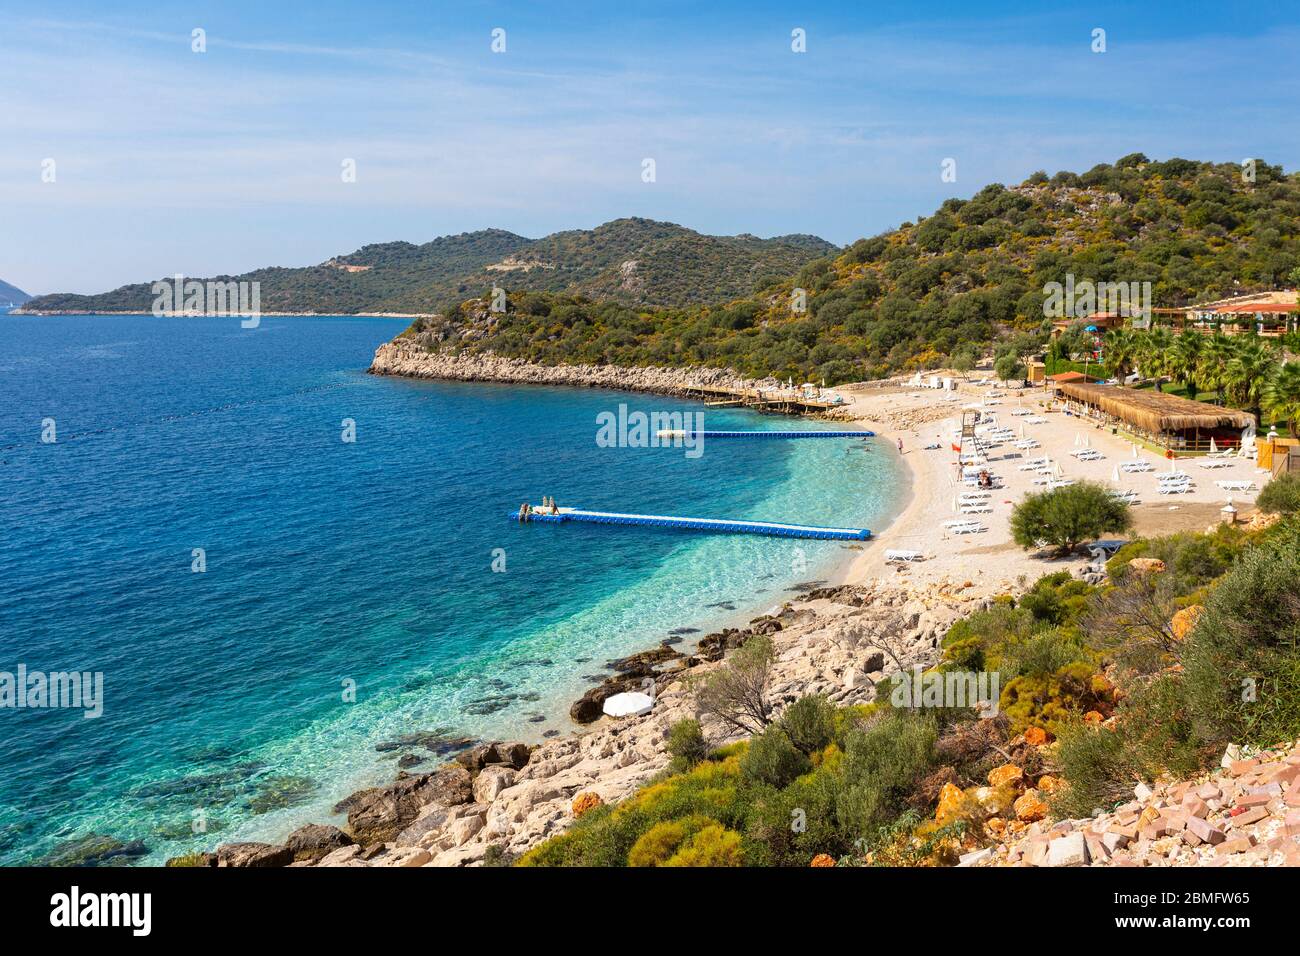 Vue sur une plage, Kaş Belediyesi Halk Plajı, Kaş, Turquie Banque D'Images